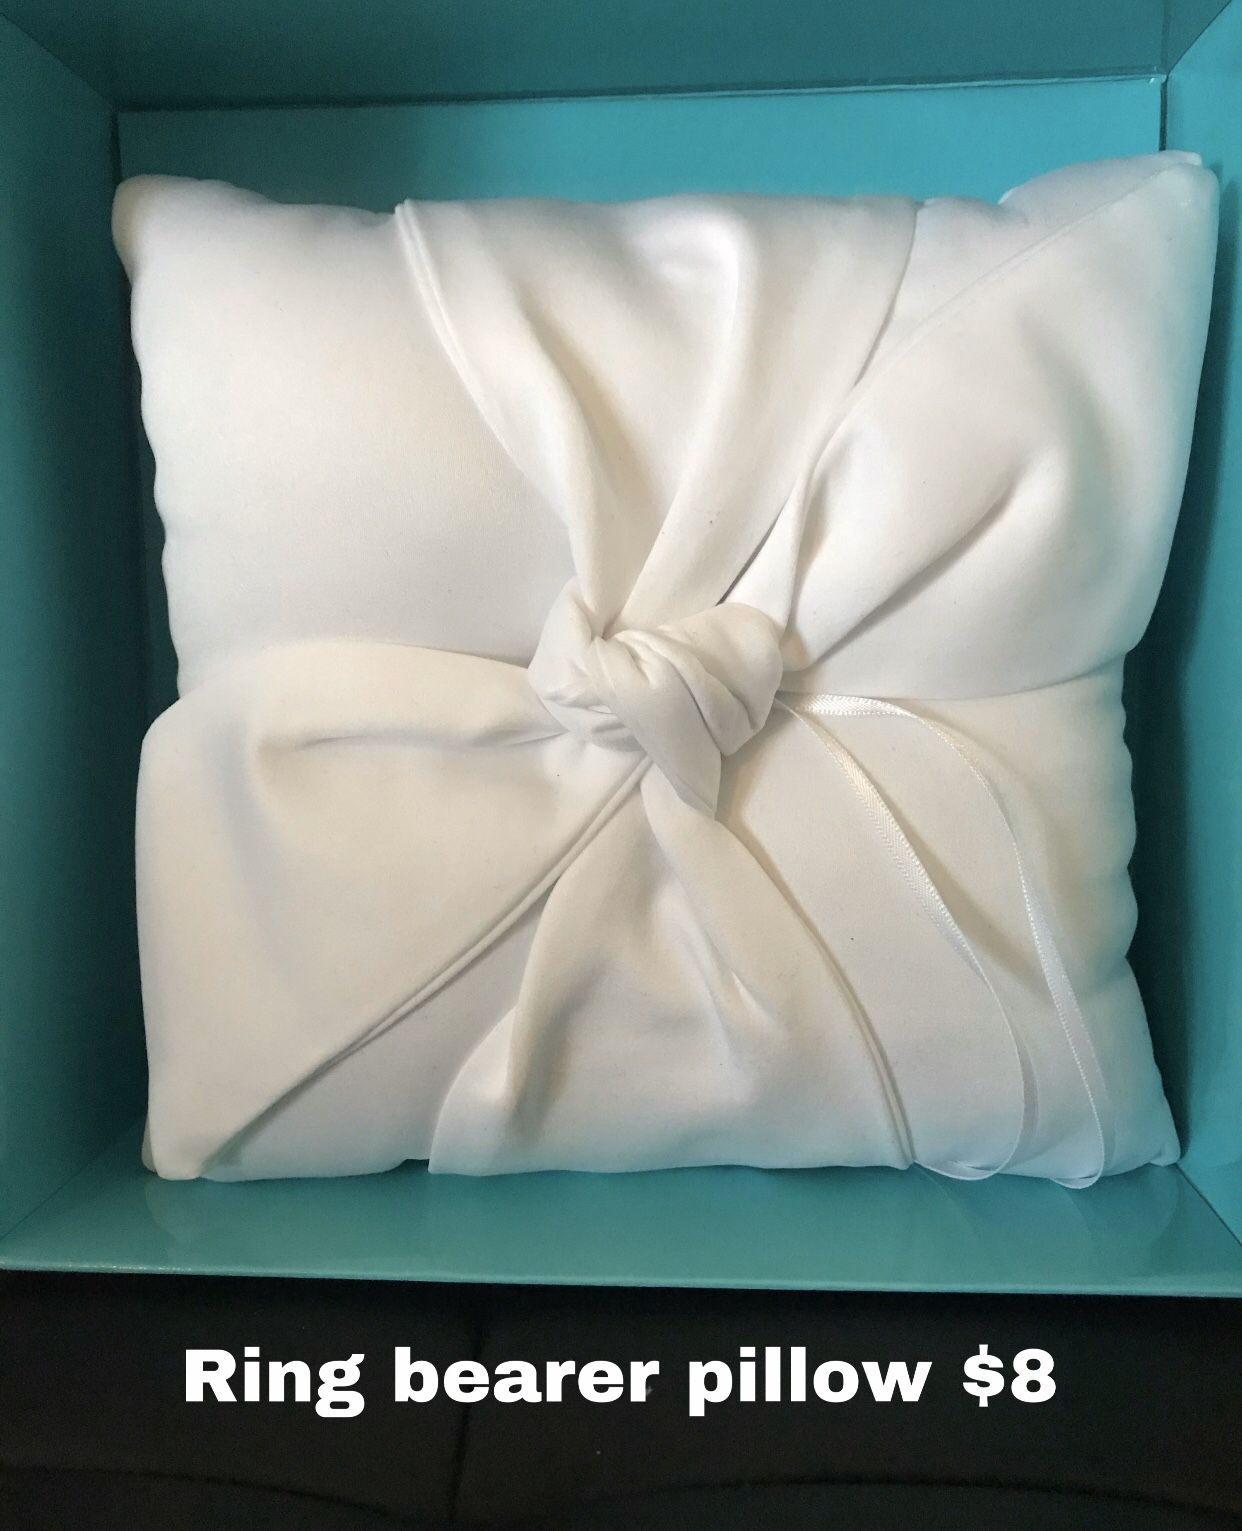 Ring bearer pillow